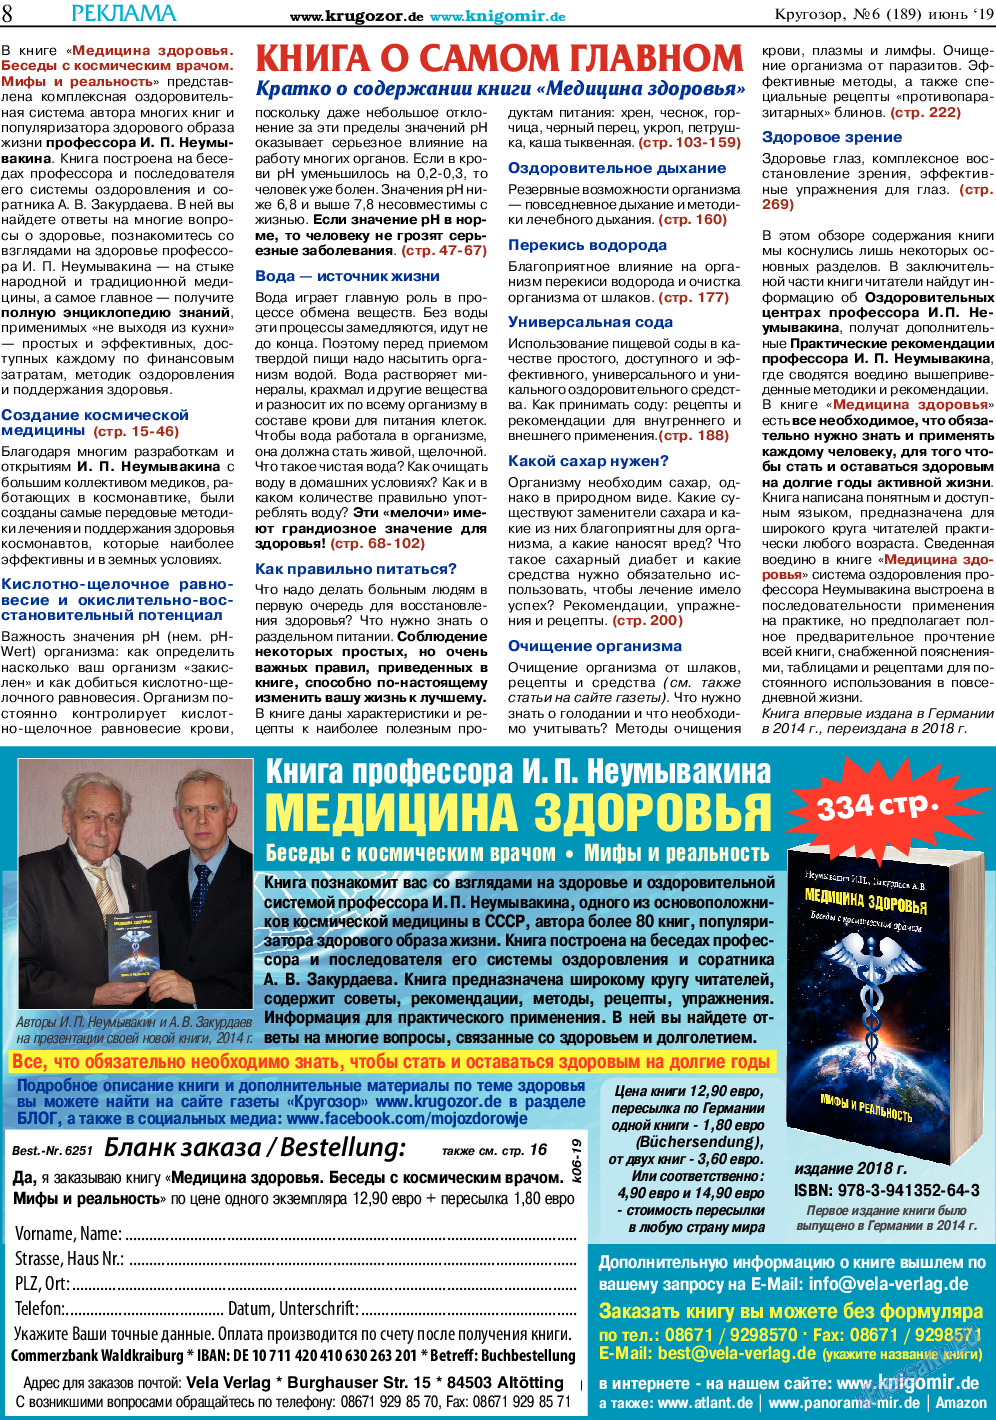 Кругозор, газета. 2019 №6 стр.8